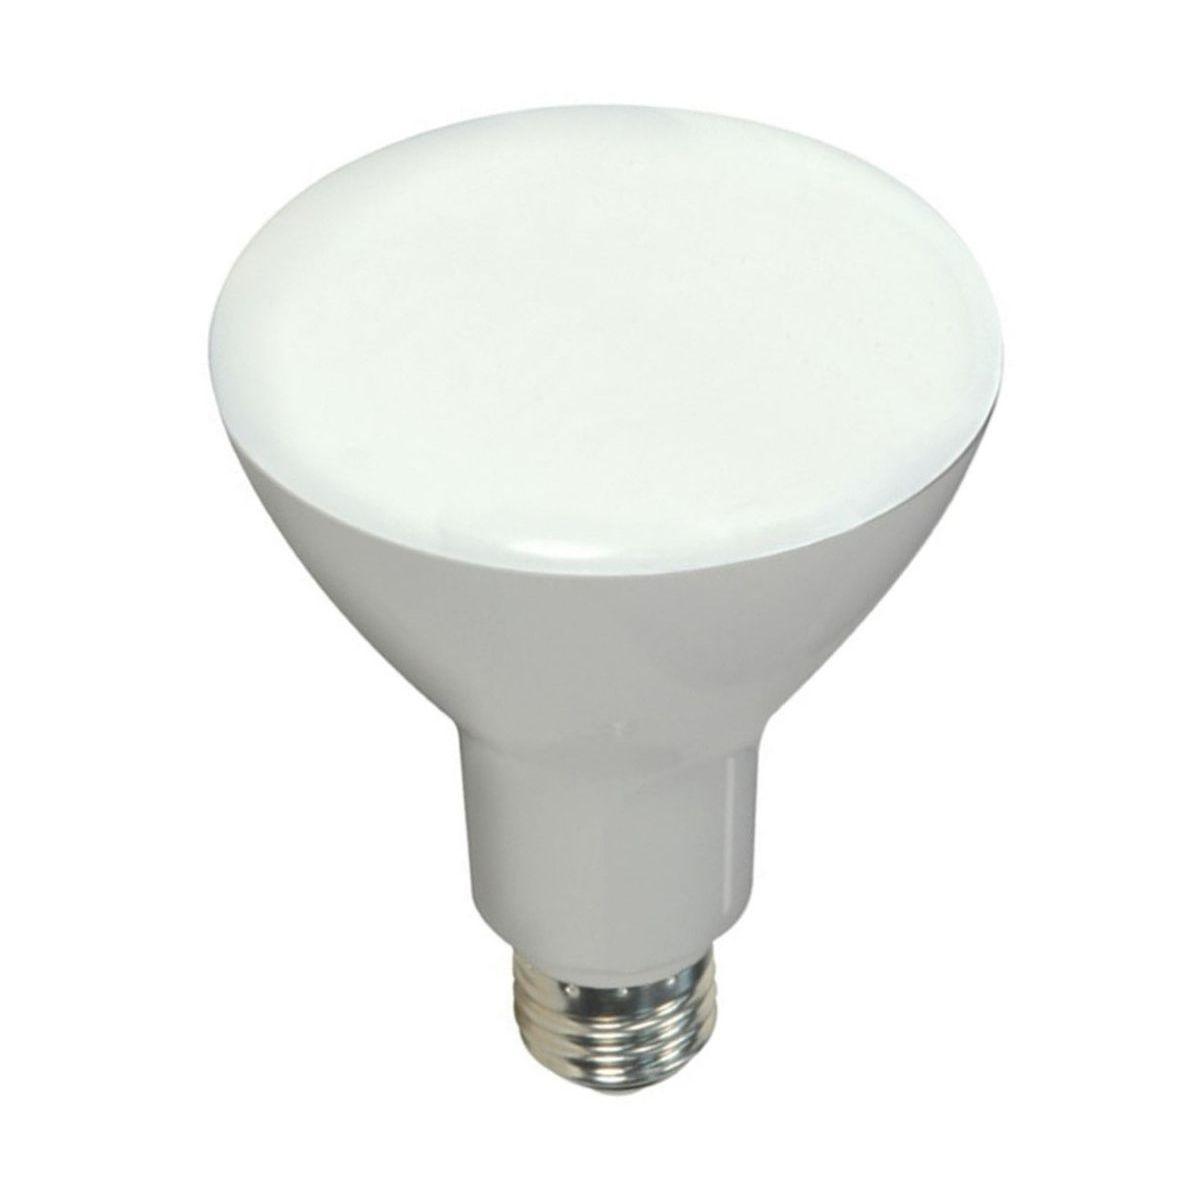 LED R30/BR30 Reflector bulb, 10 watt, 650 Lumens, 4000K, E26 Medium Base, 105 Deg. Flood, Dimmable - Bees Lighting